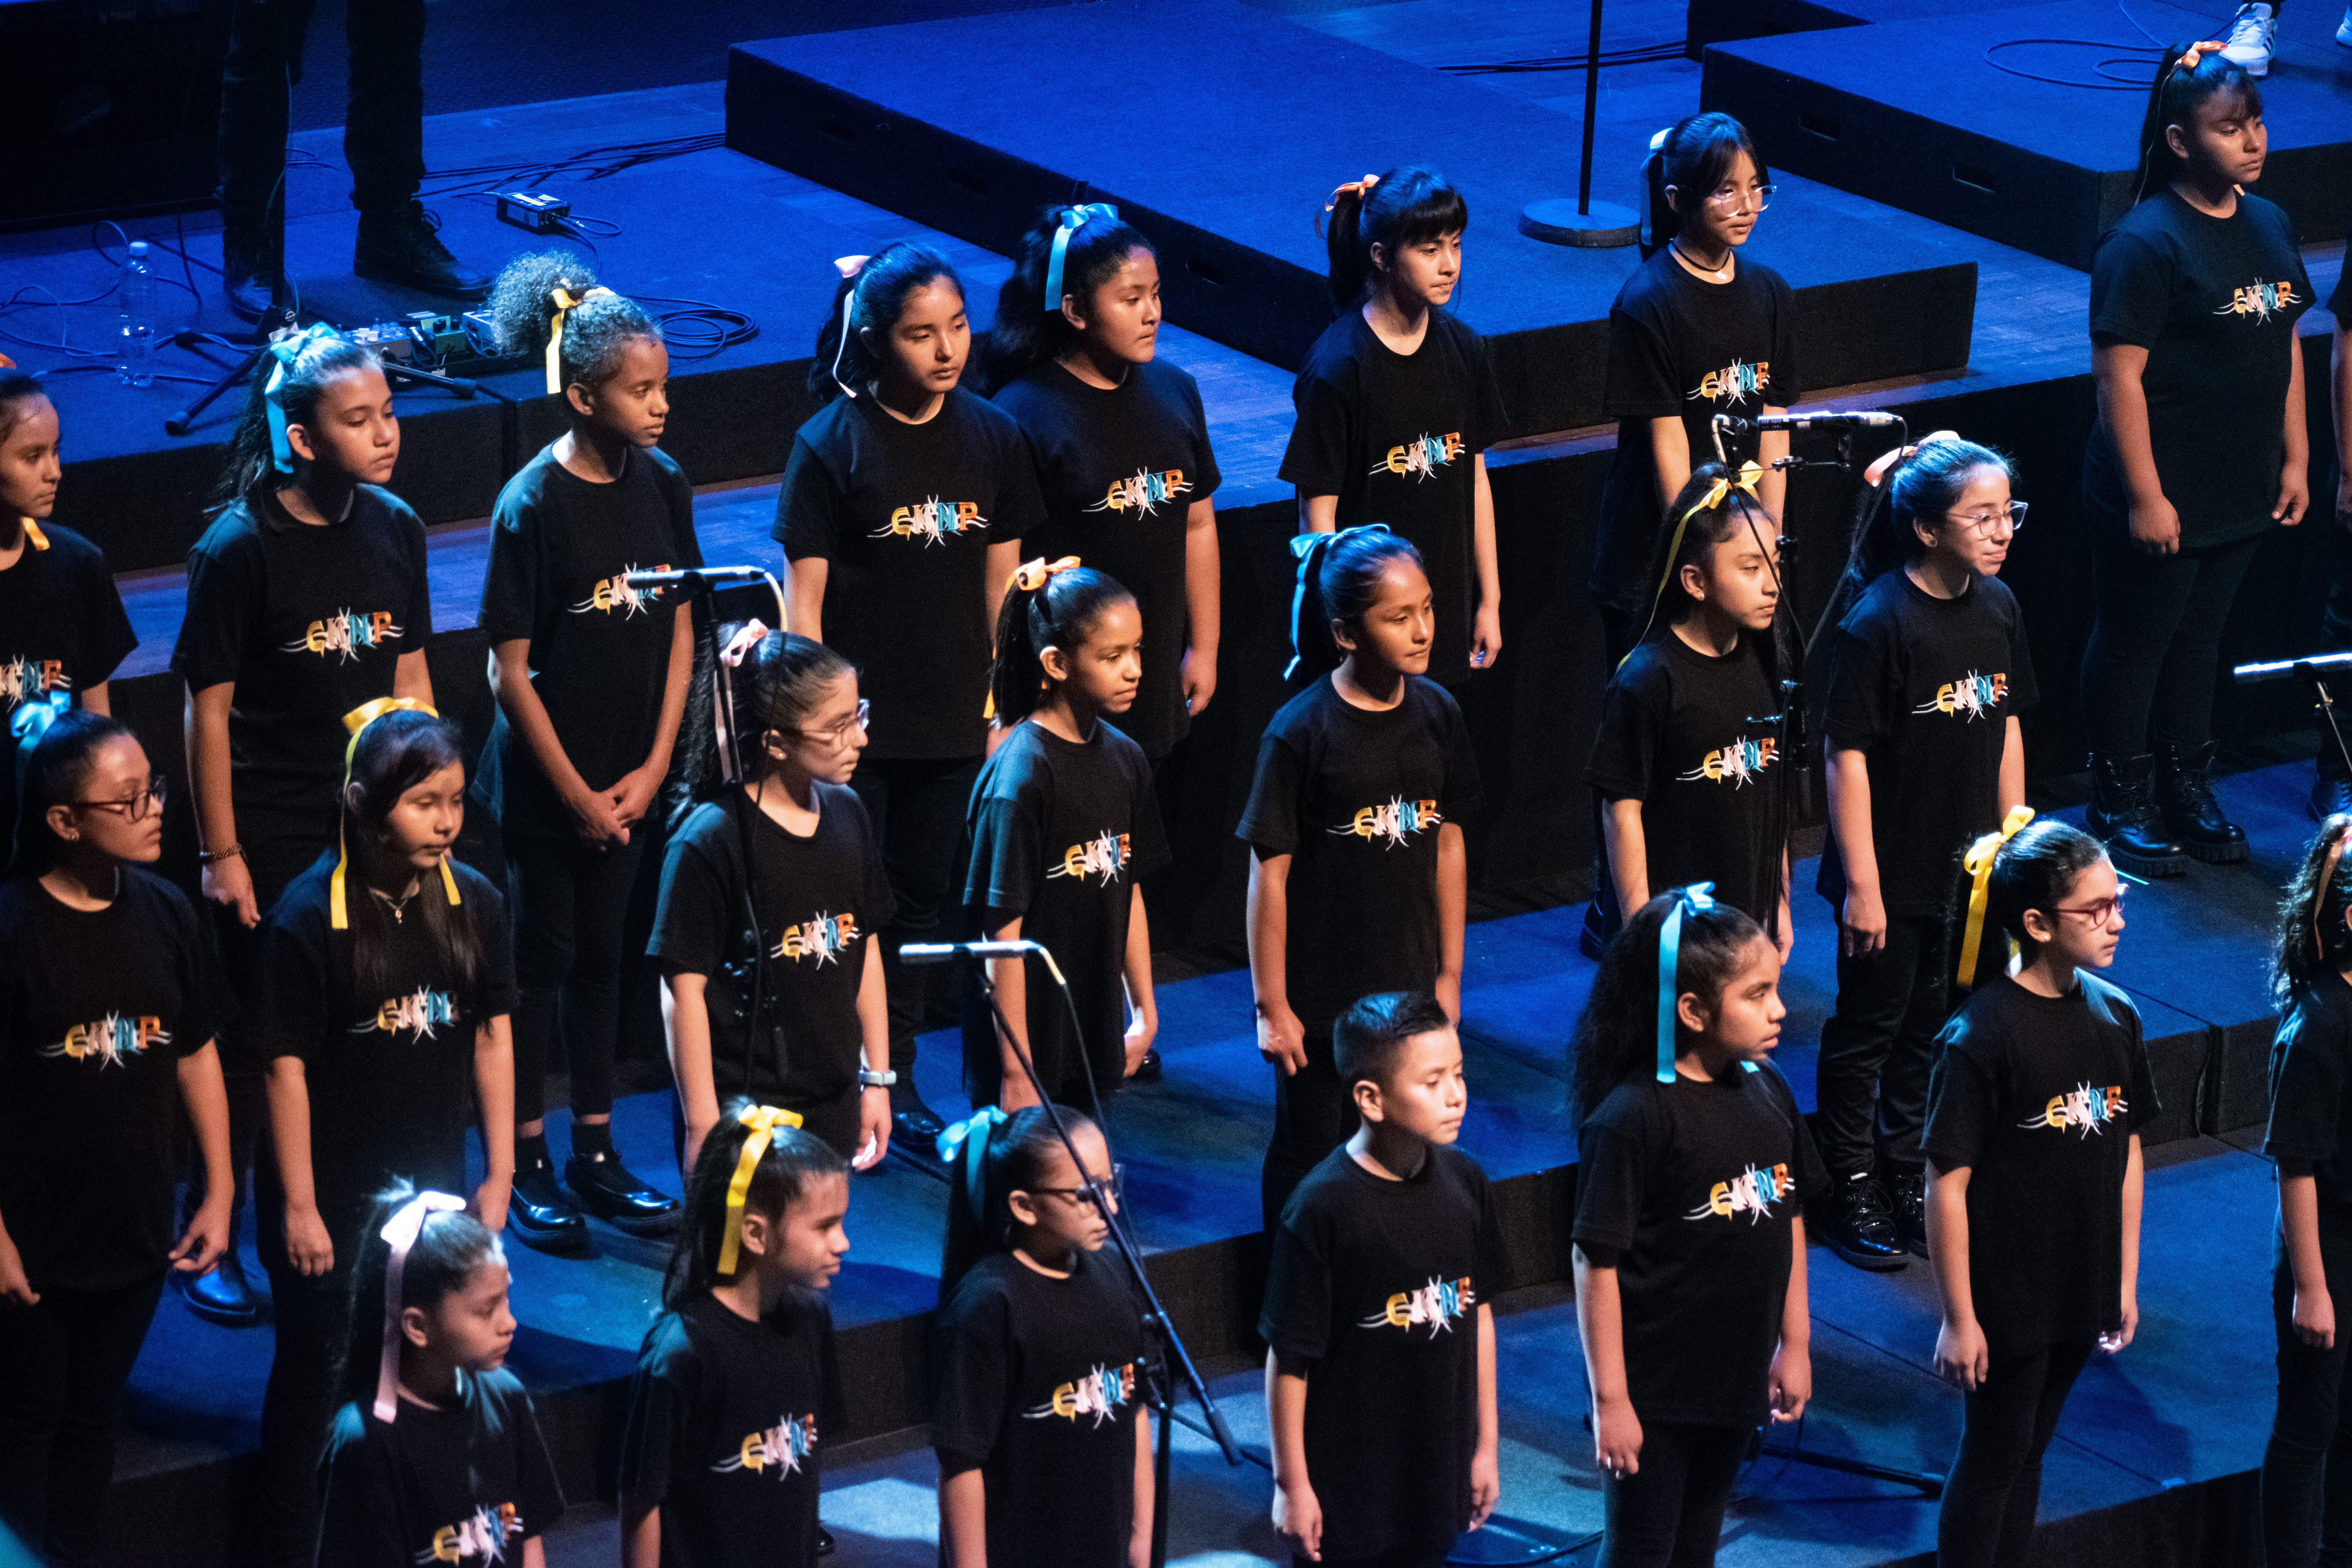 Coro Nacional de Niños del Perú presenta su exitosa producción “Cantos del Ande” con el acompañamiento de Milena Warthon